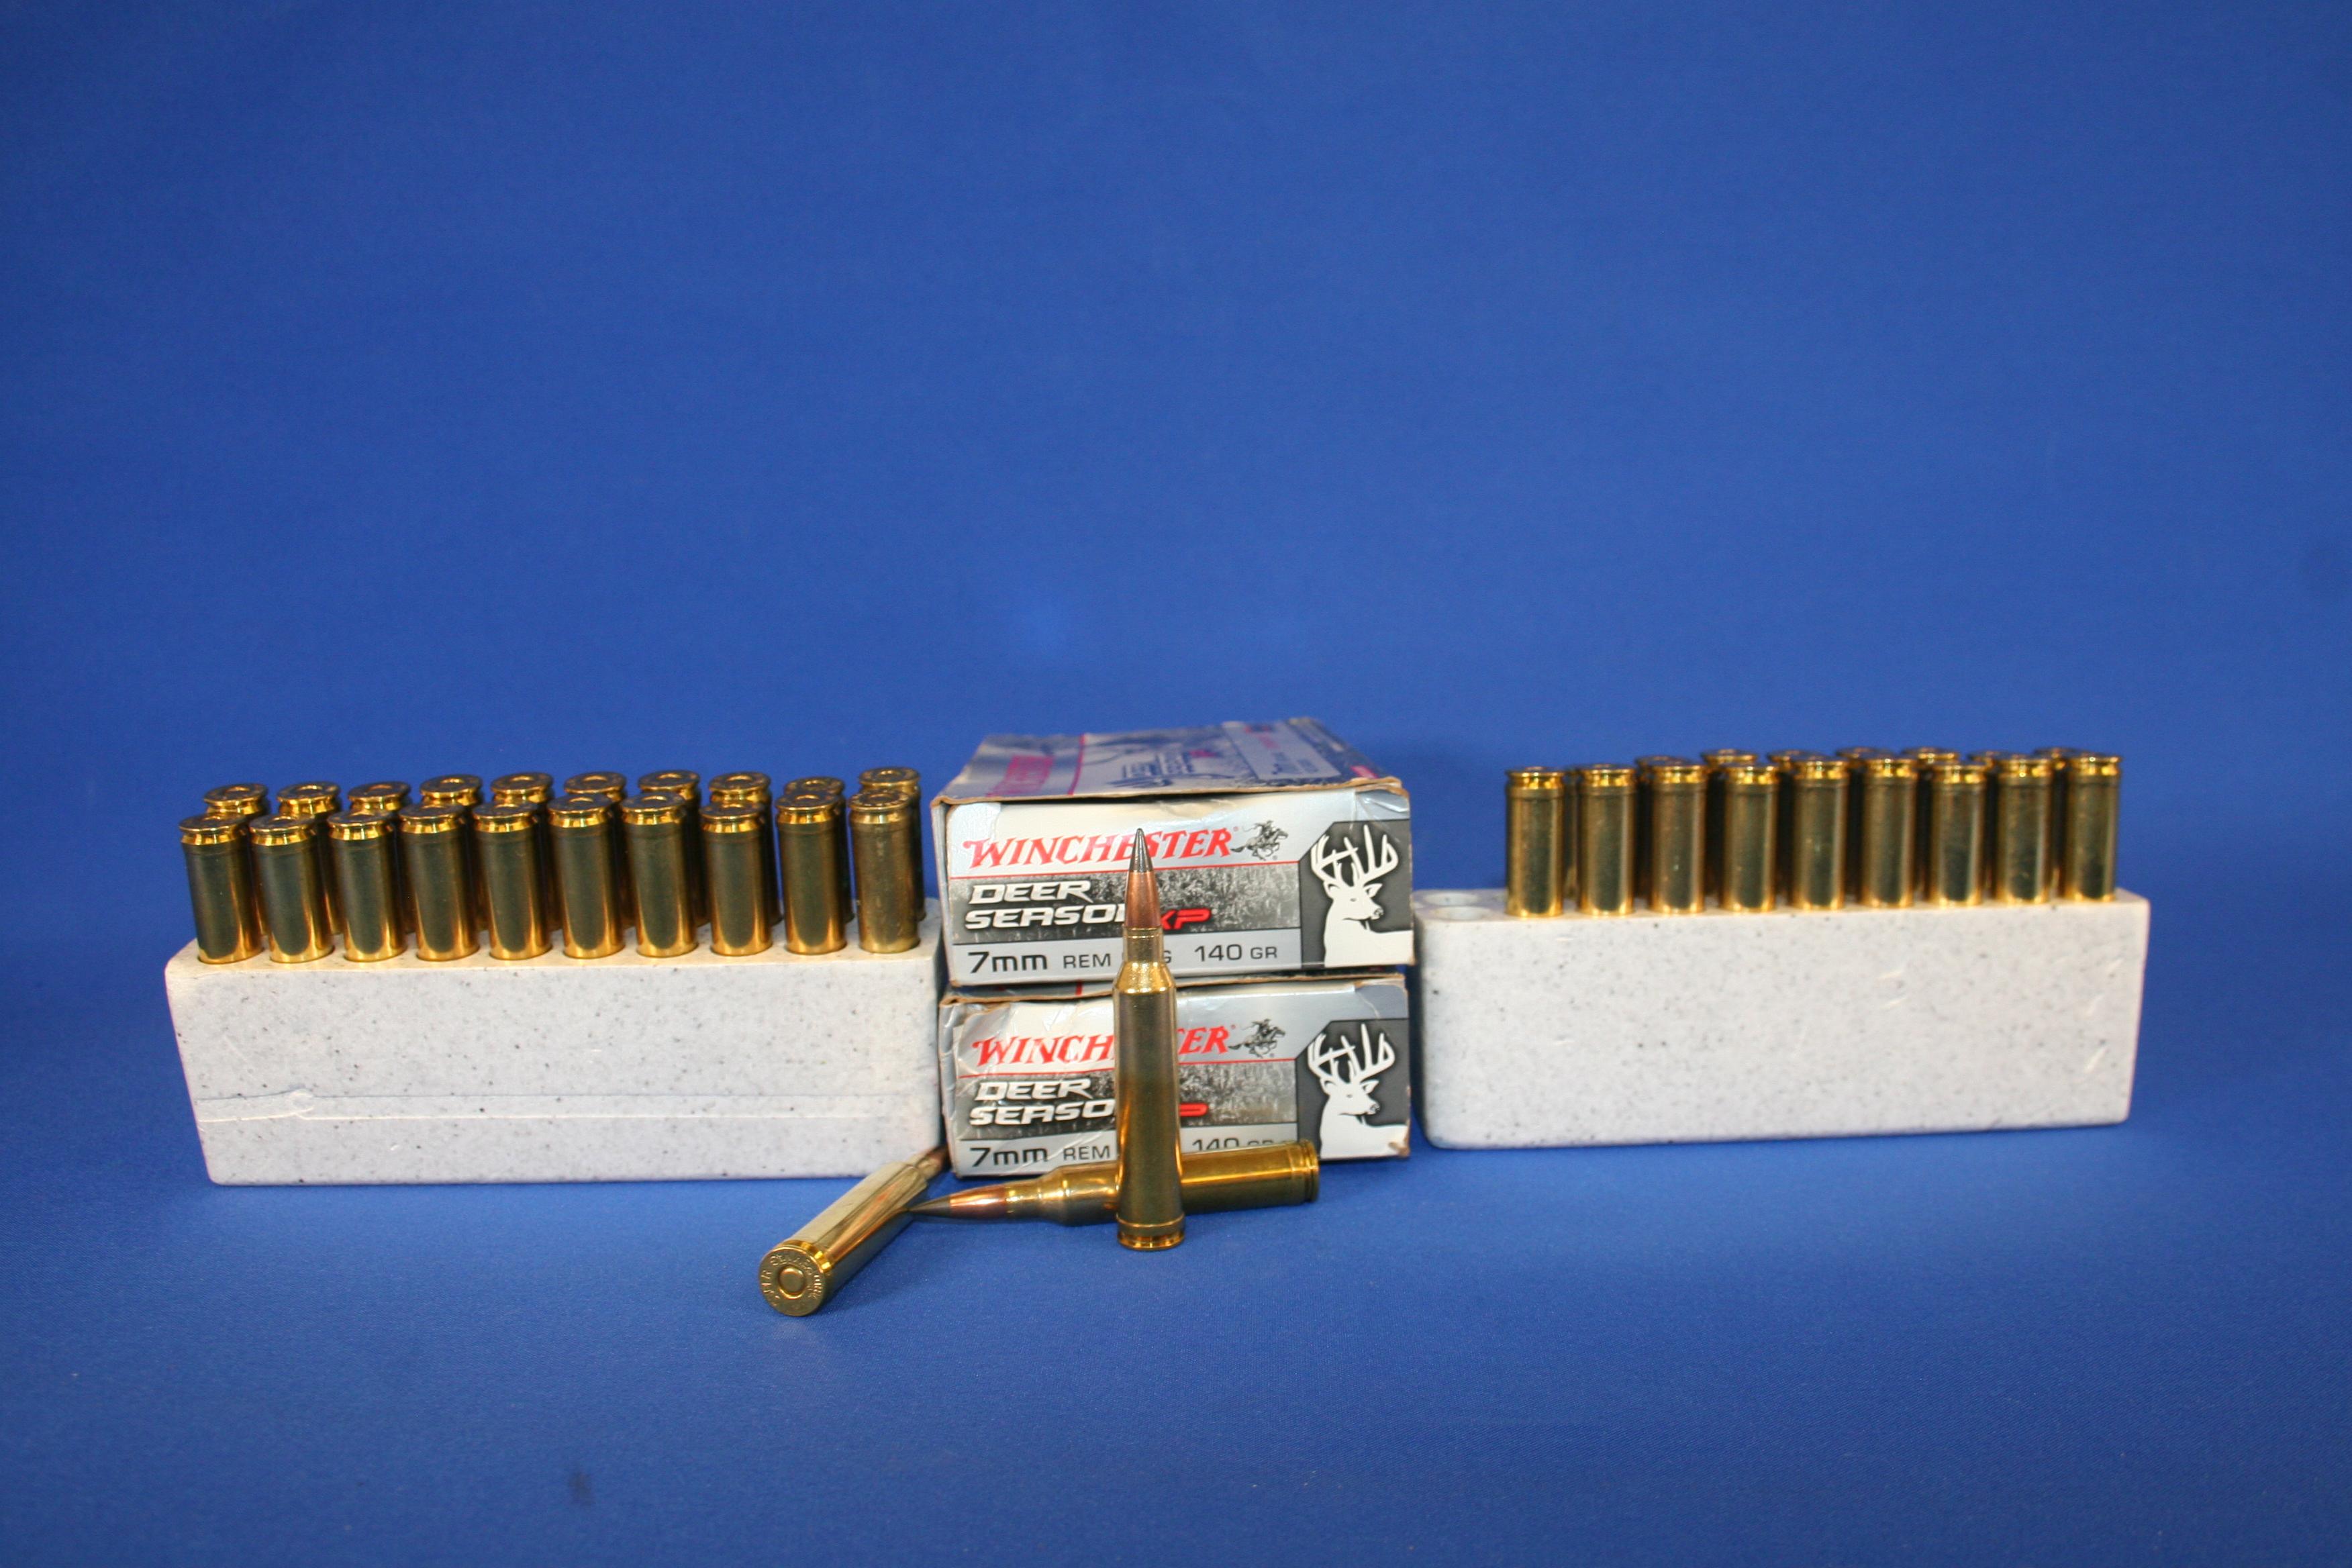 7mm Remington Ammunition.